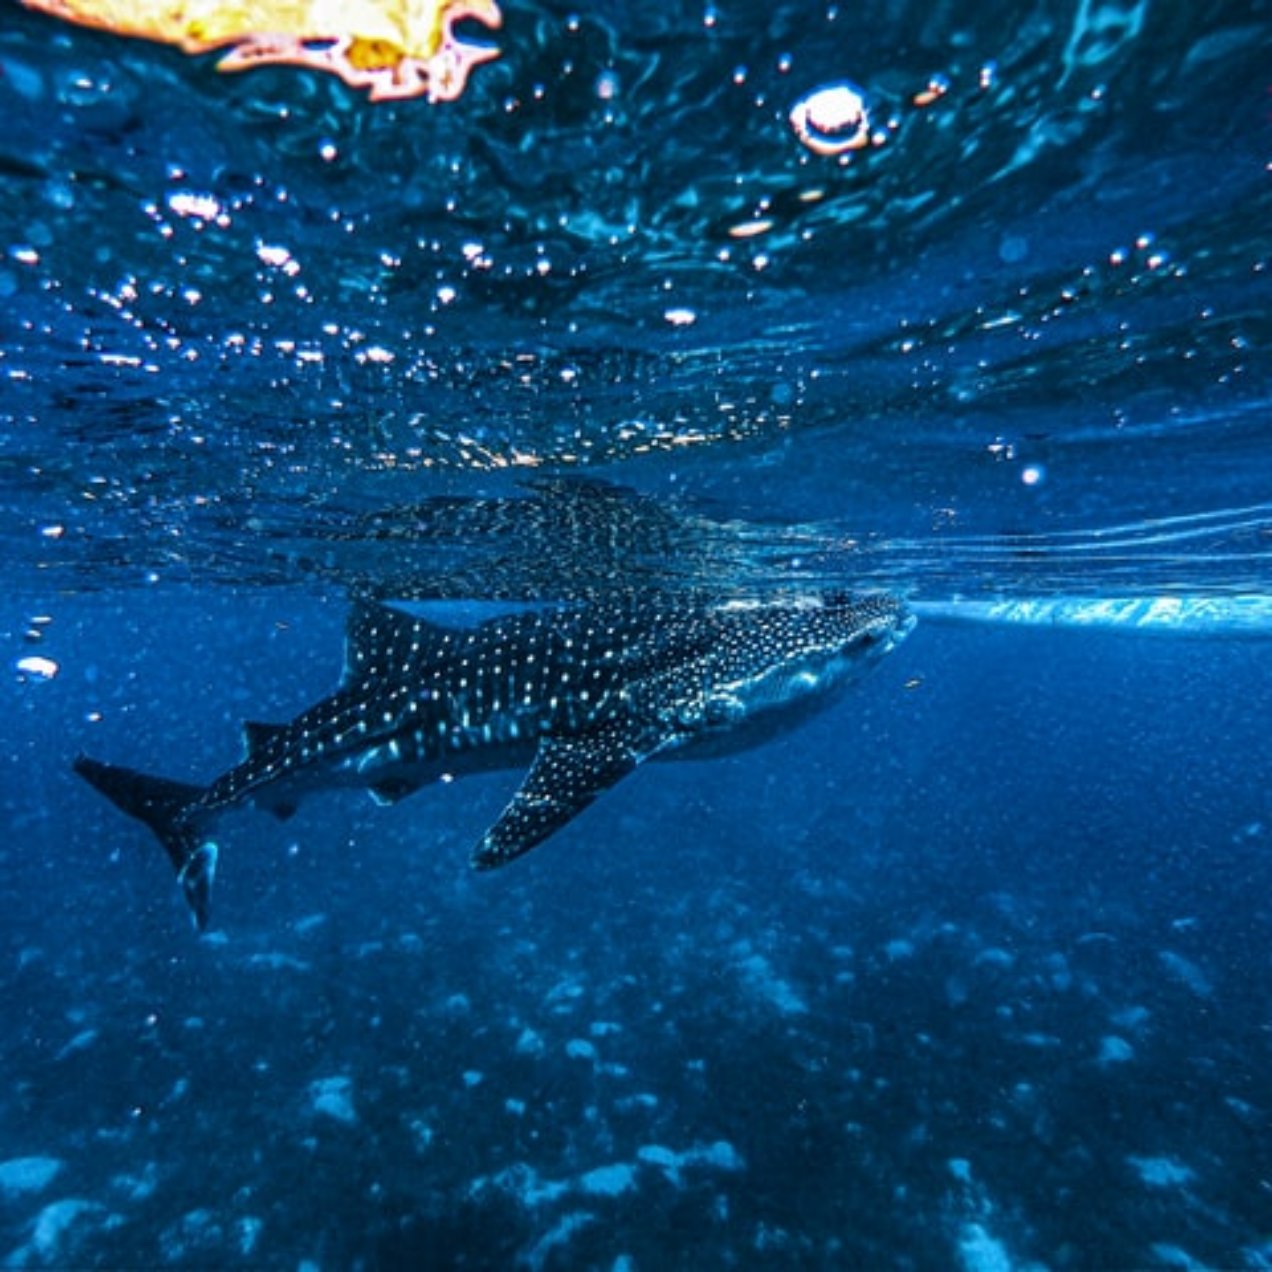 Nada con Tiburones Ballena en Cancún